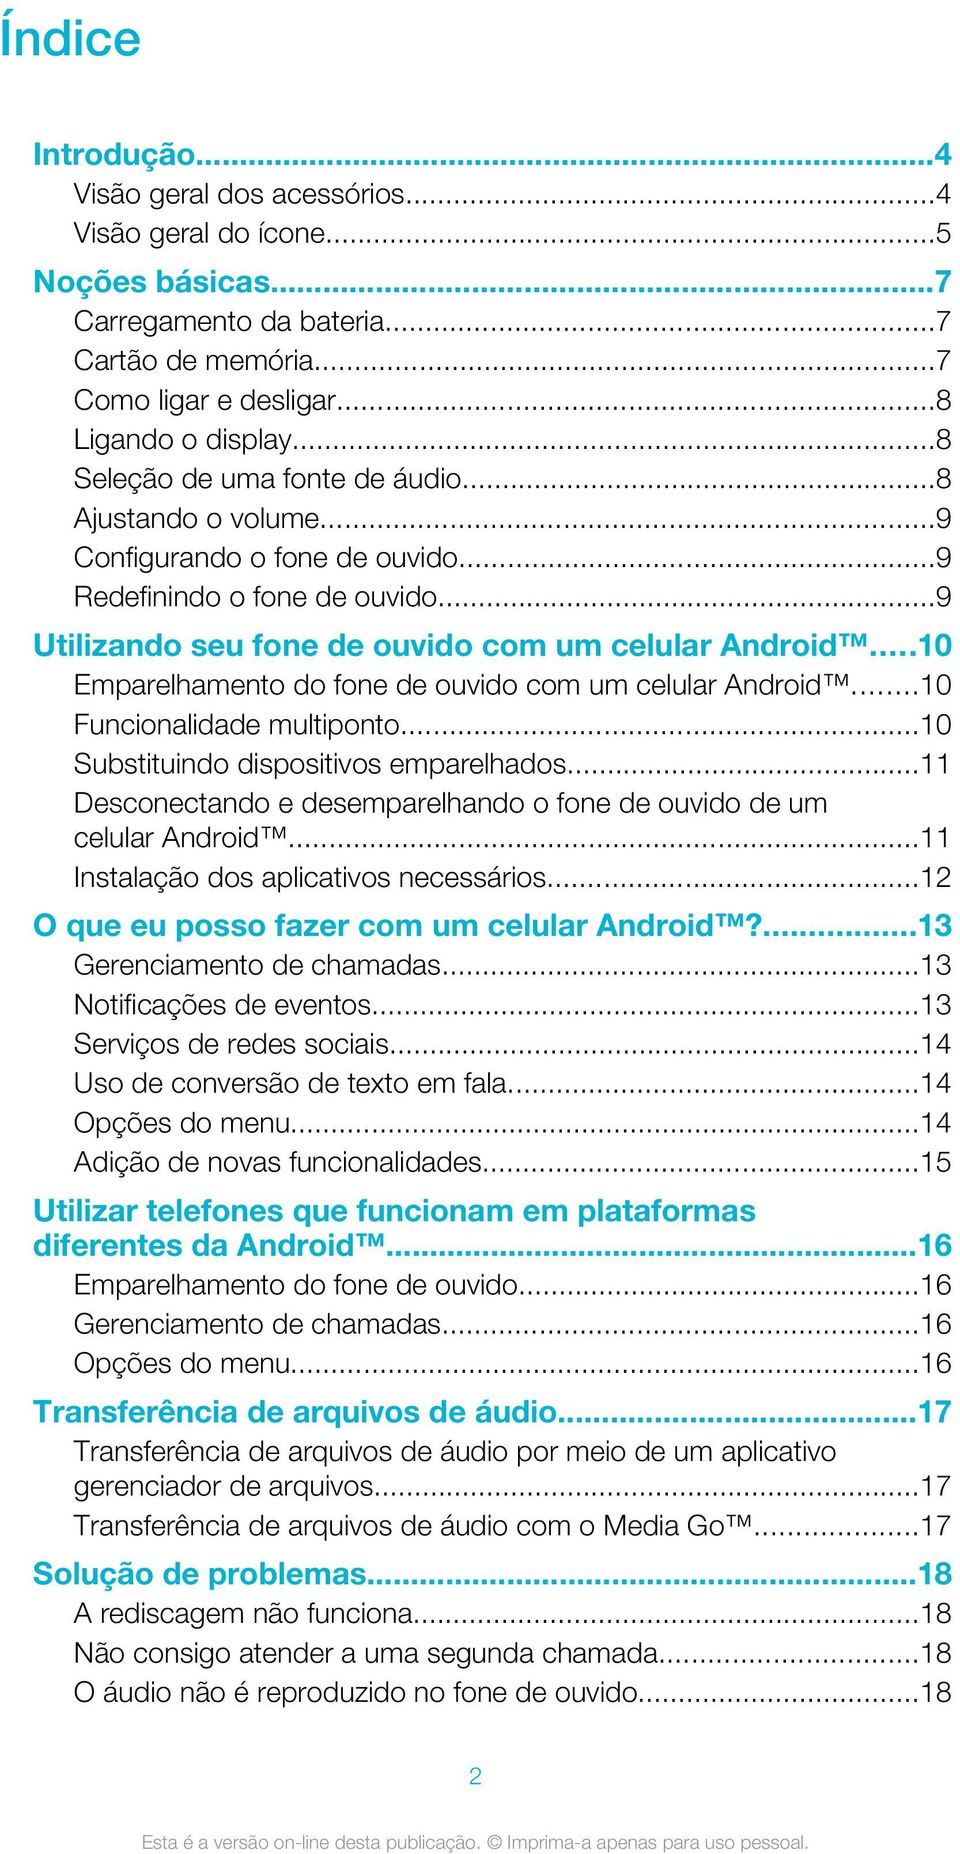 ..10 Emparelhamento do fone de ouvido com um celular Android...10 Funcionalidade multiponto...10 Substituindo dispositivos emparelhados.